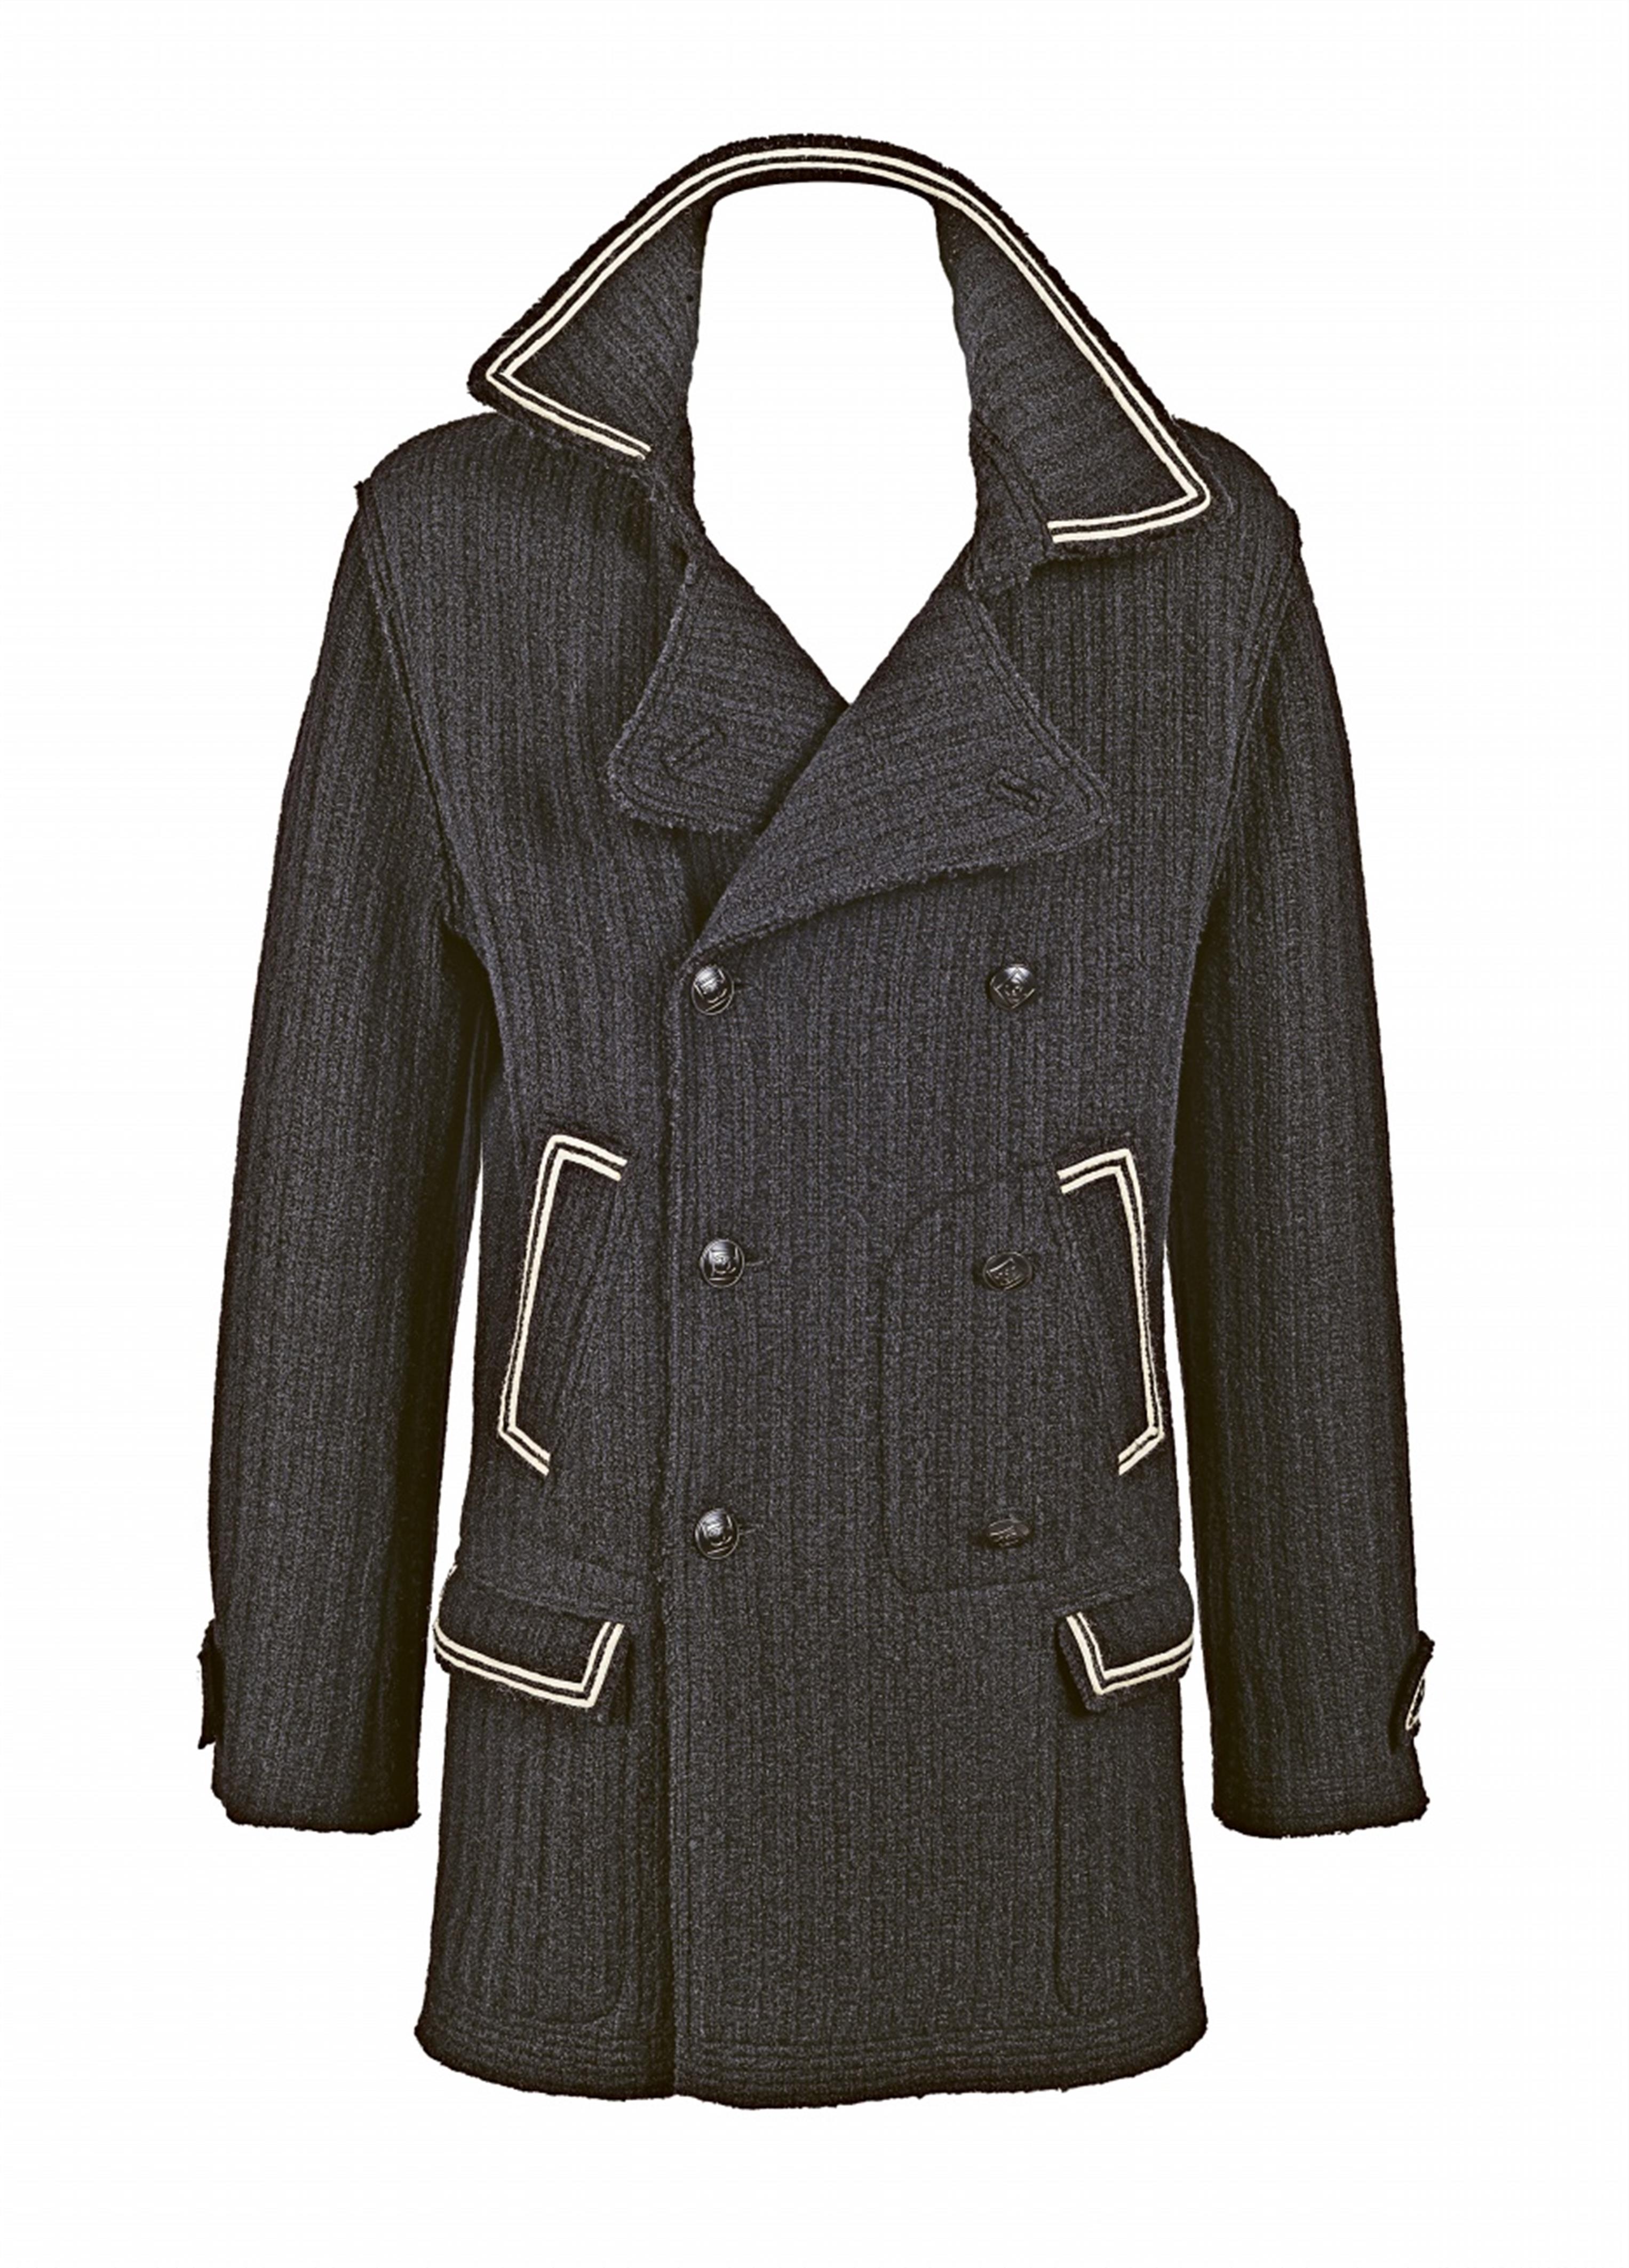 A Chanel men's pea coat, Autumn 2007 - image-1